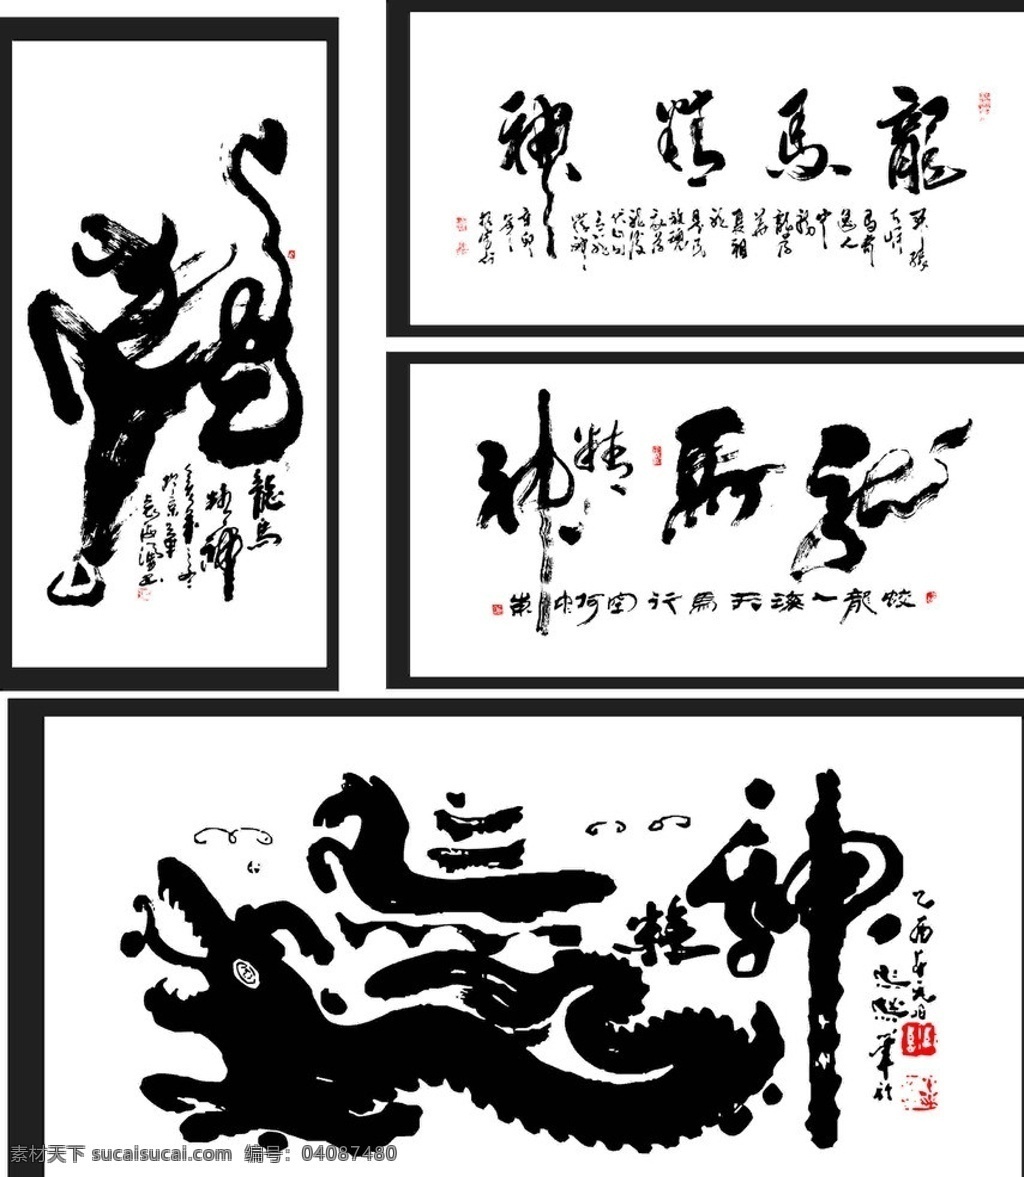 龙马精神 最美 写法 书法 龙马 精神 书法大师 毛笔作品 临摹字体 传统文化 文化艺术 矢量